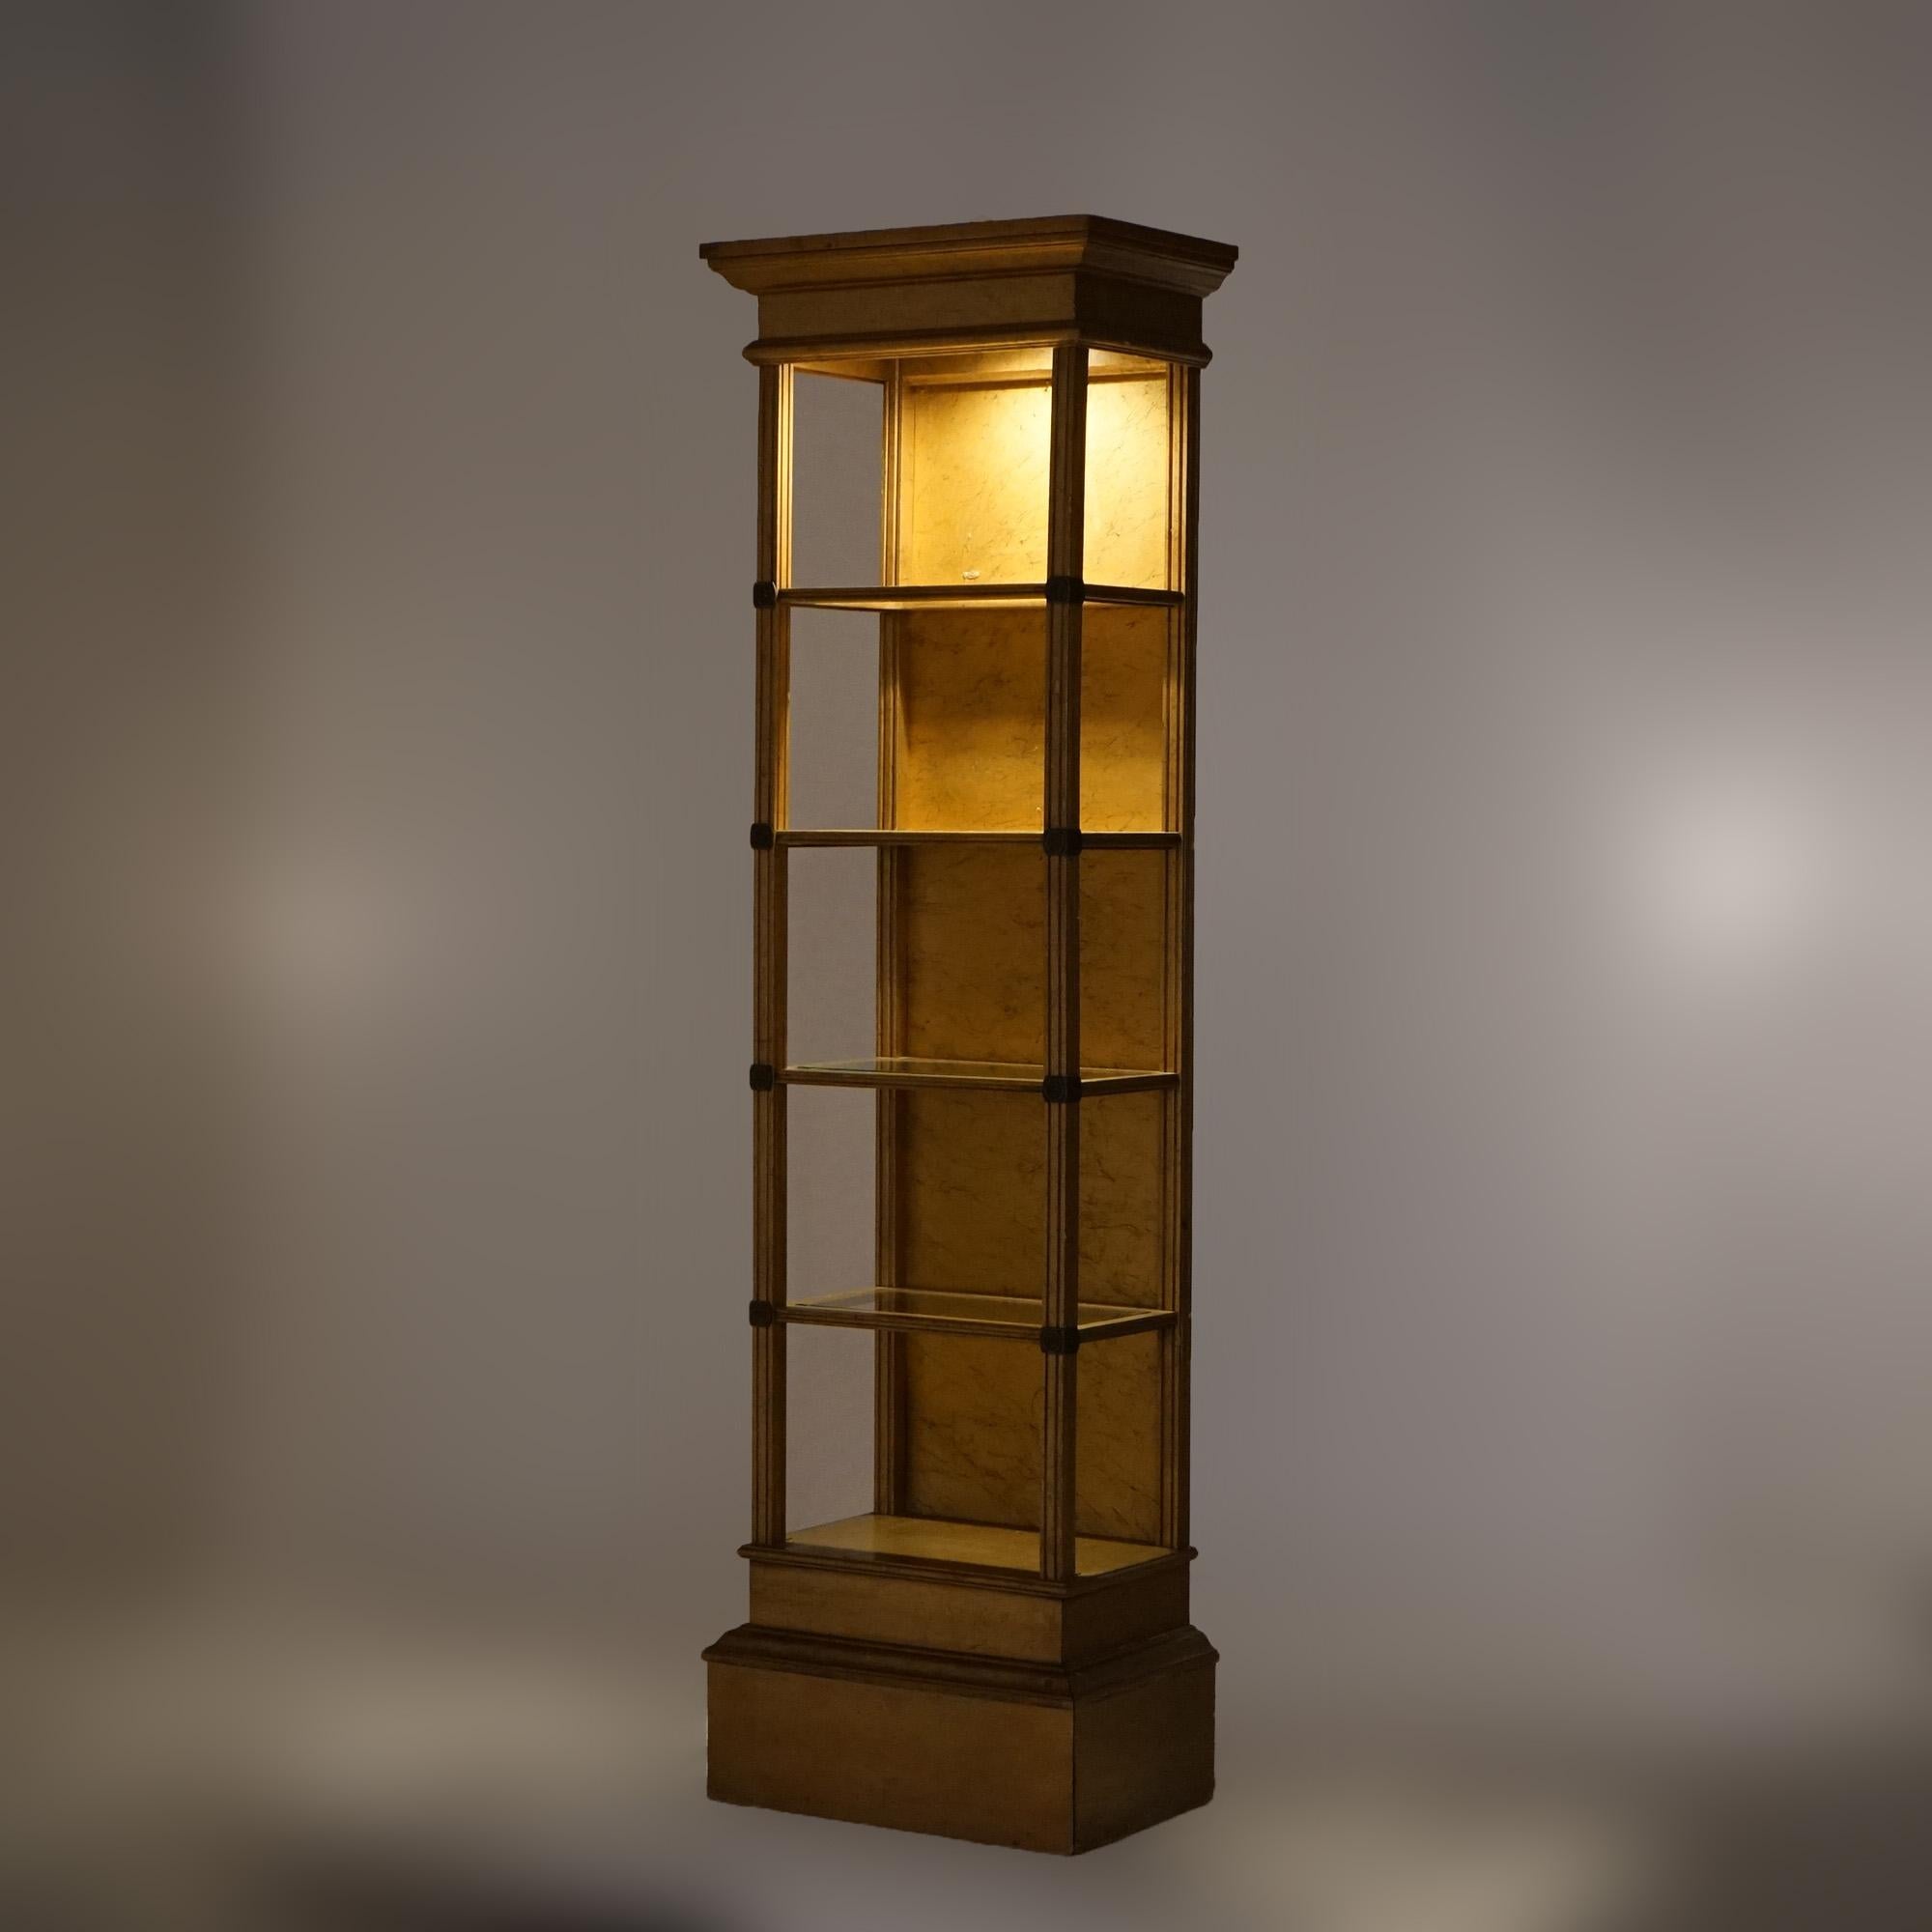 Vitrine ancienne de style français en bois doré avec cinq étagères ouvertes, éclairée, 20e siècle

Dimensions : 77''H x 22''W x 14''D